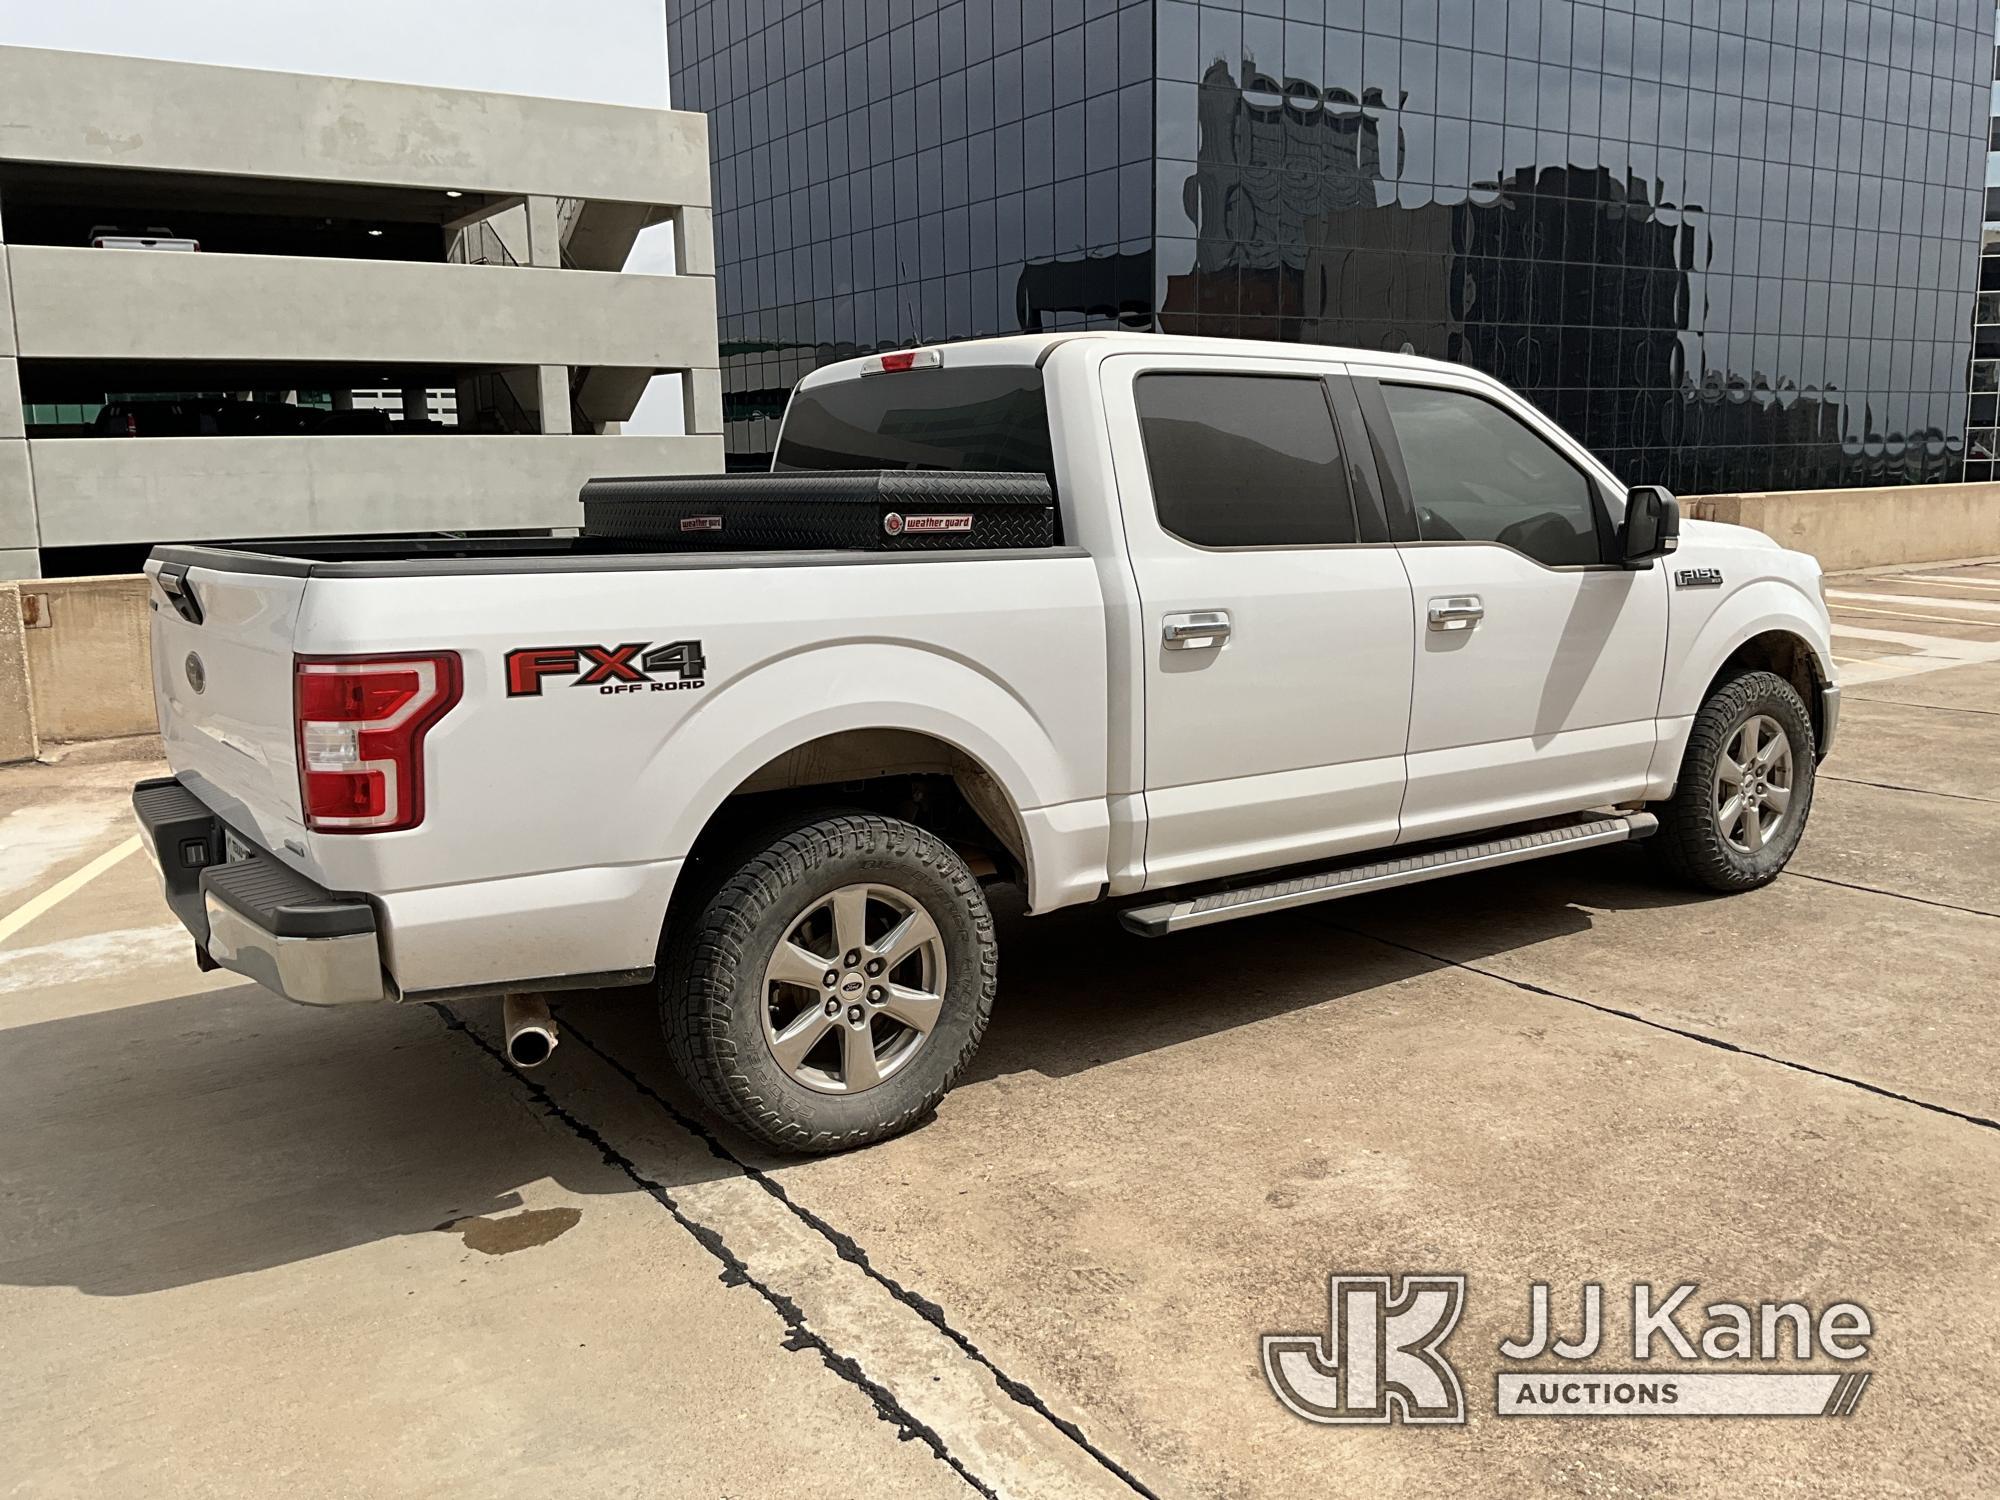 (Midland, TX) 2019 Ford F150 4x4 Crew-Cab Pickup Truck Runs & Moves) (Jump To Start, Per Seller, Uni